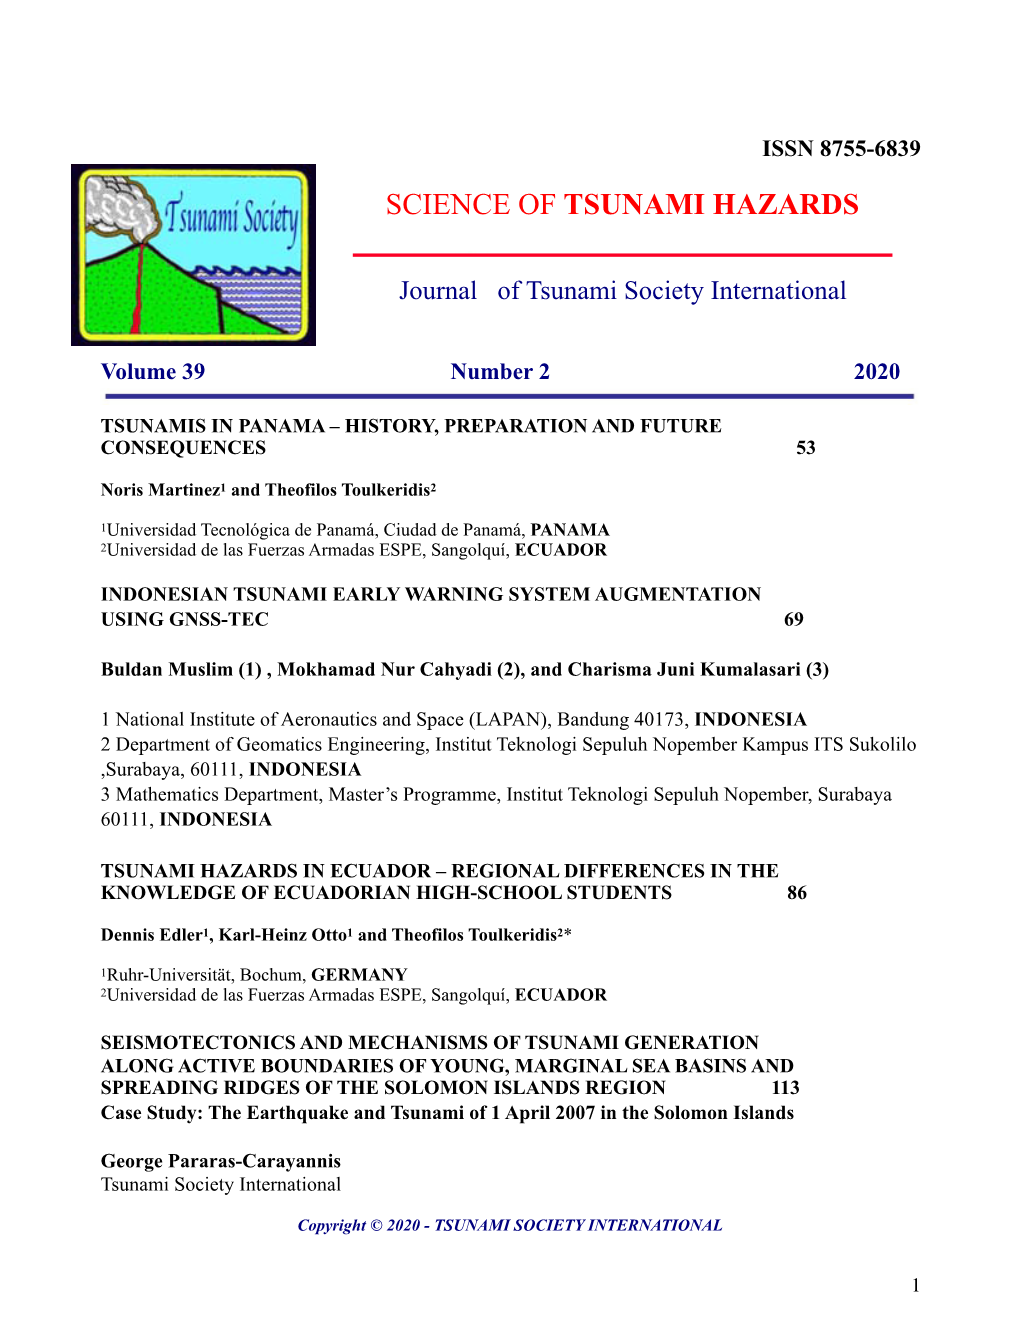 Journal of Tsunami Society International